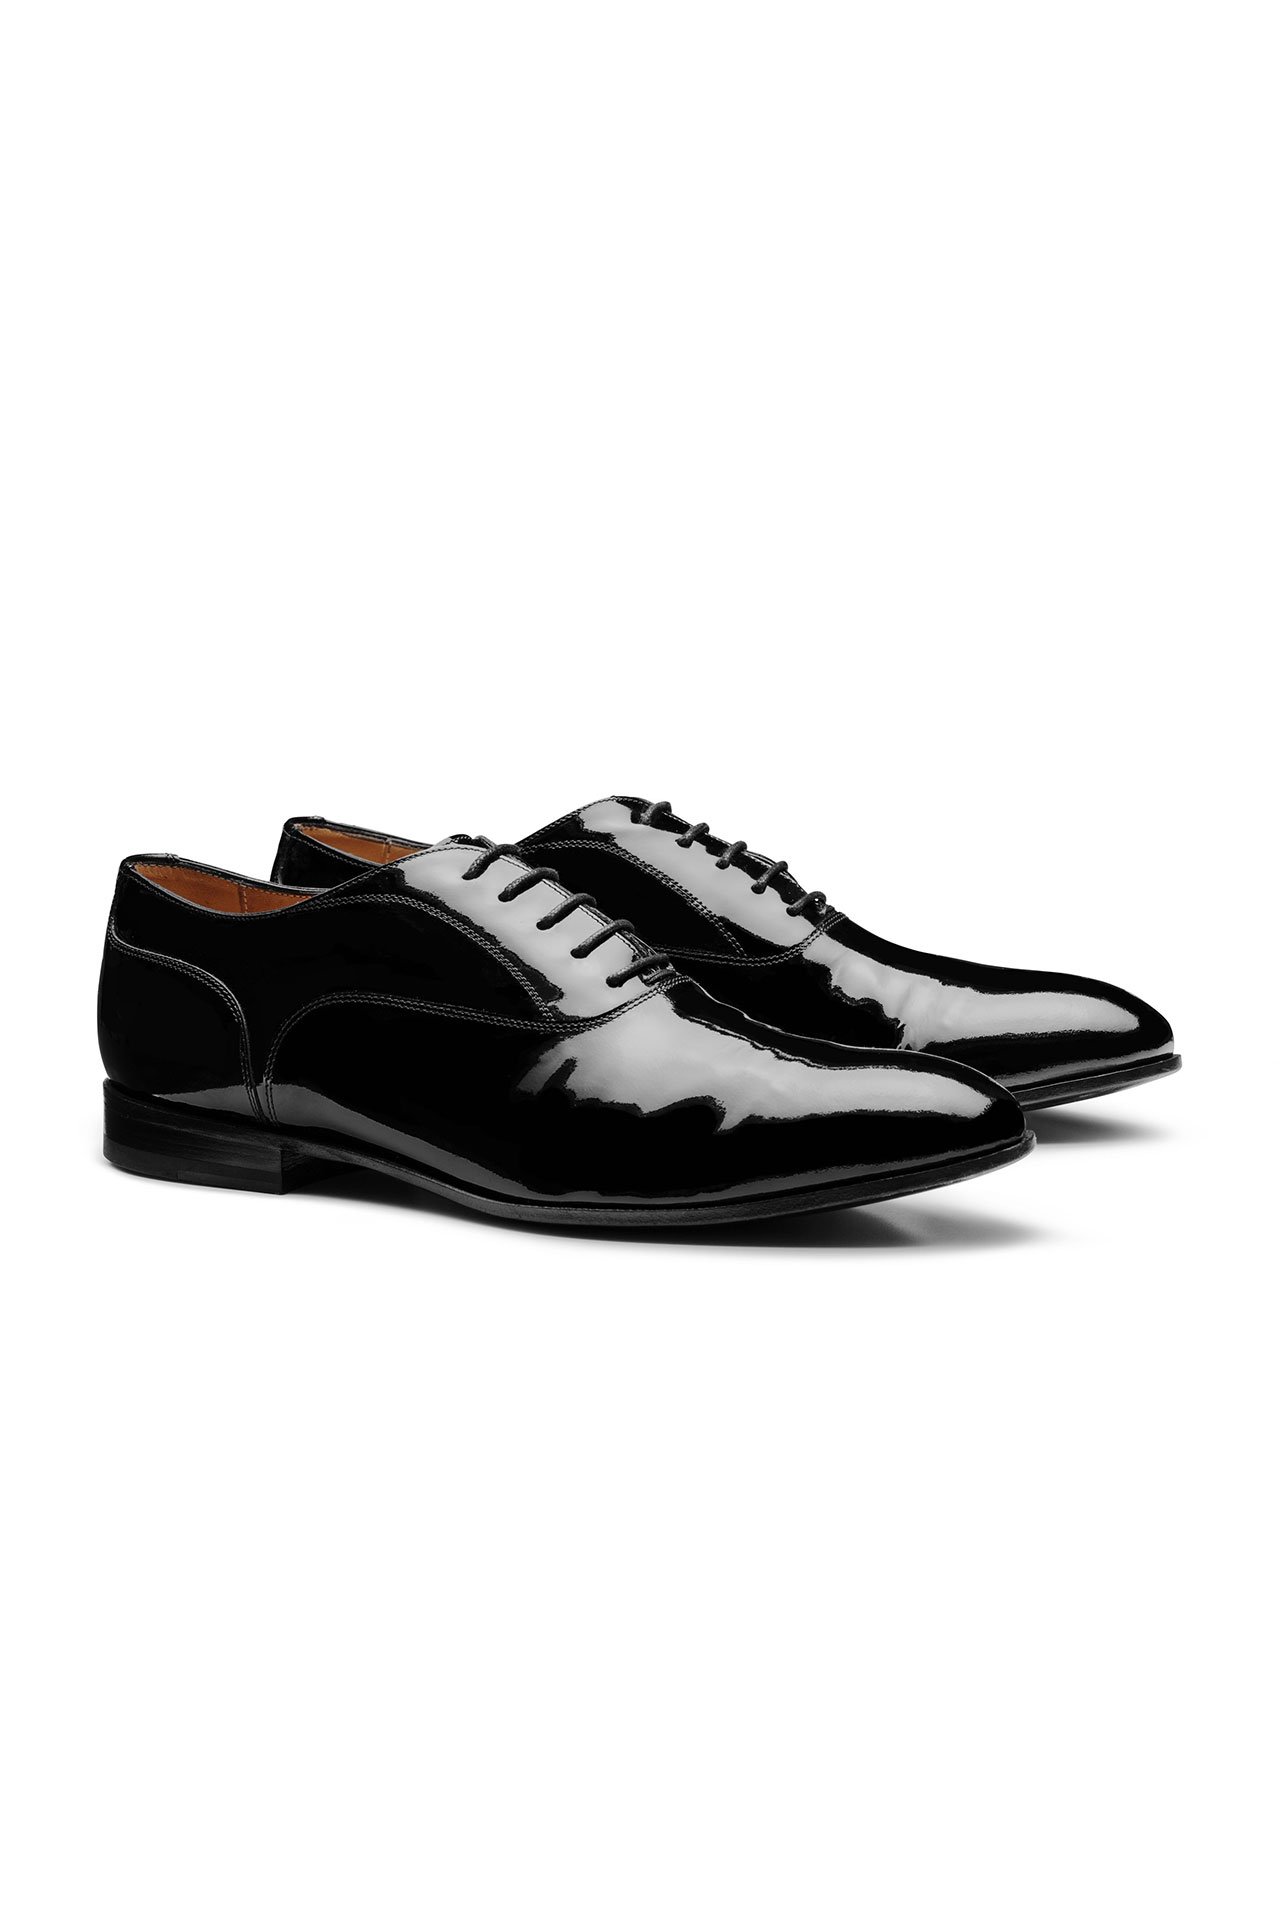 Patent Leather Shoes, Mens Patent Leather Shoes